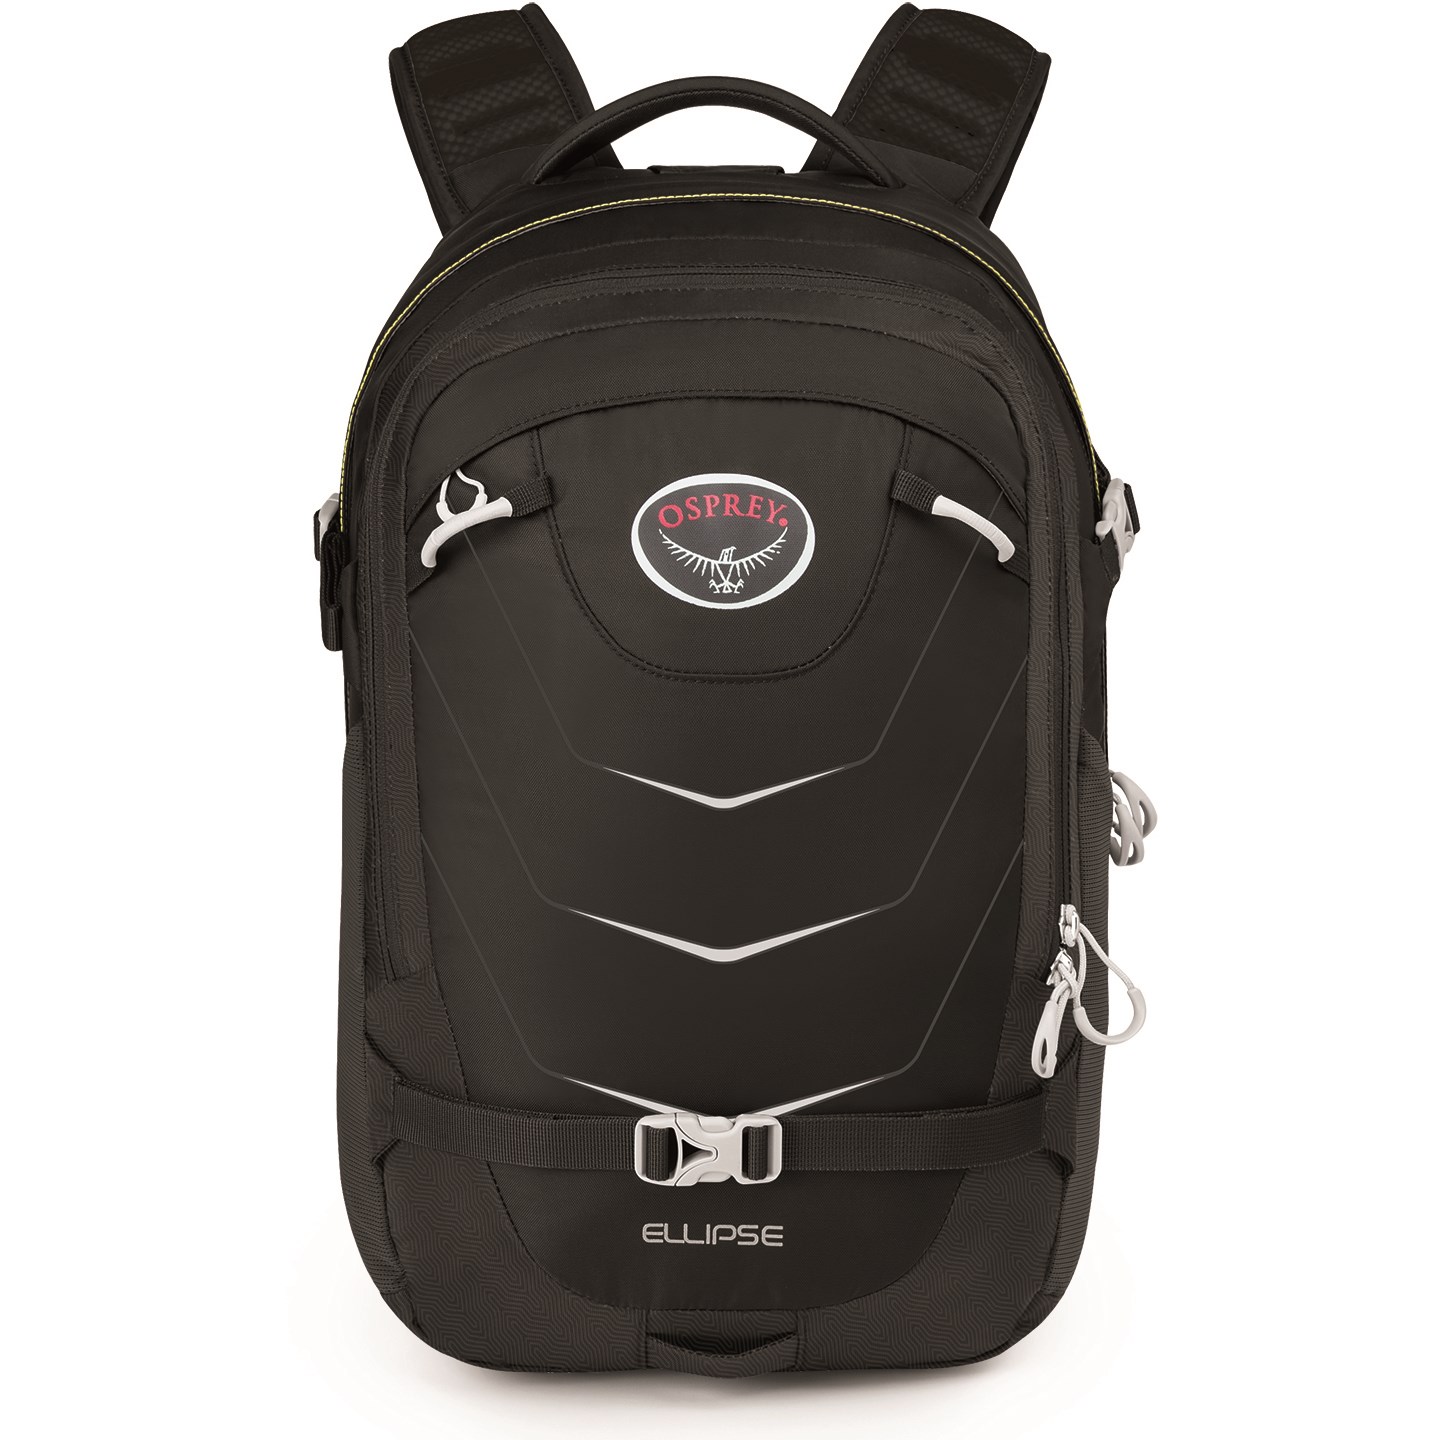 osprey-ellipse-backpack--back.jpg